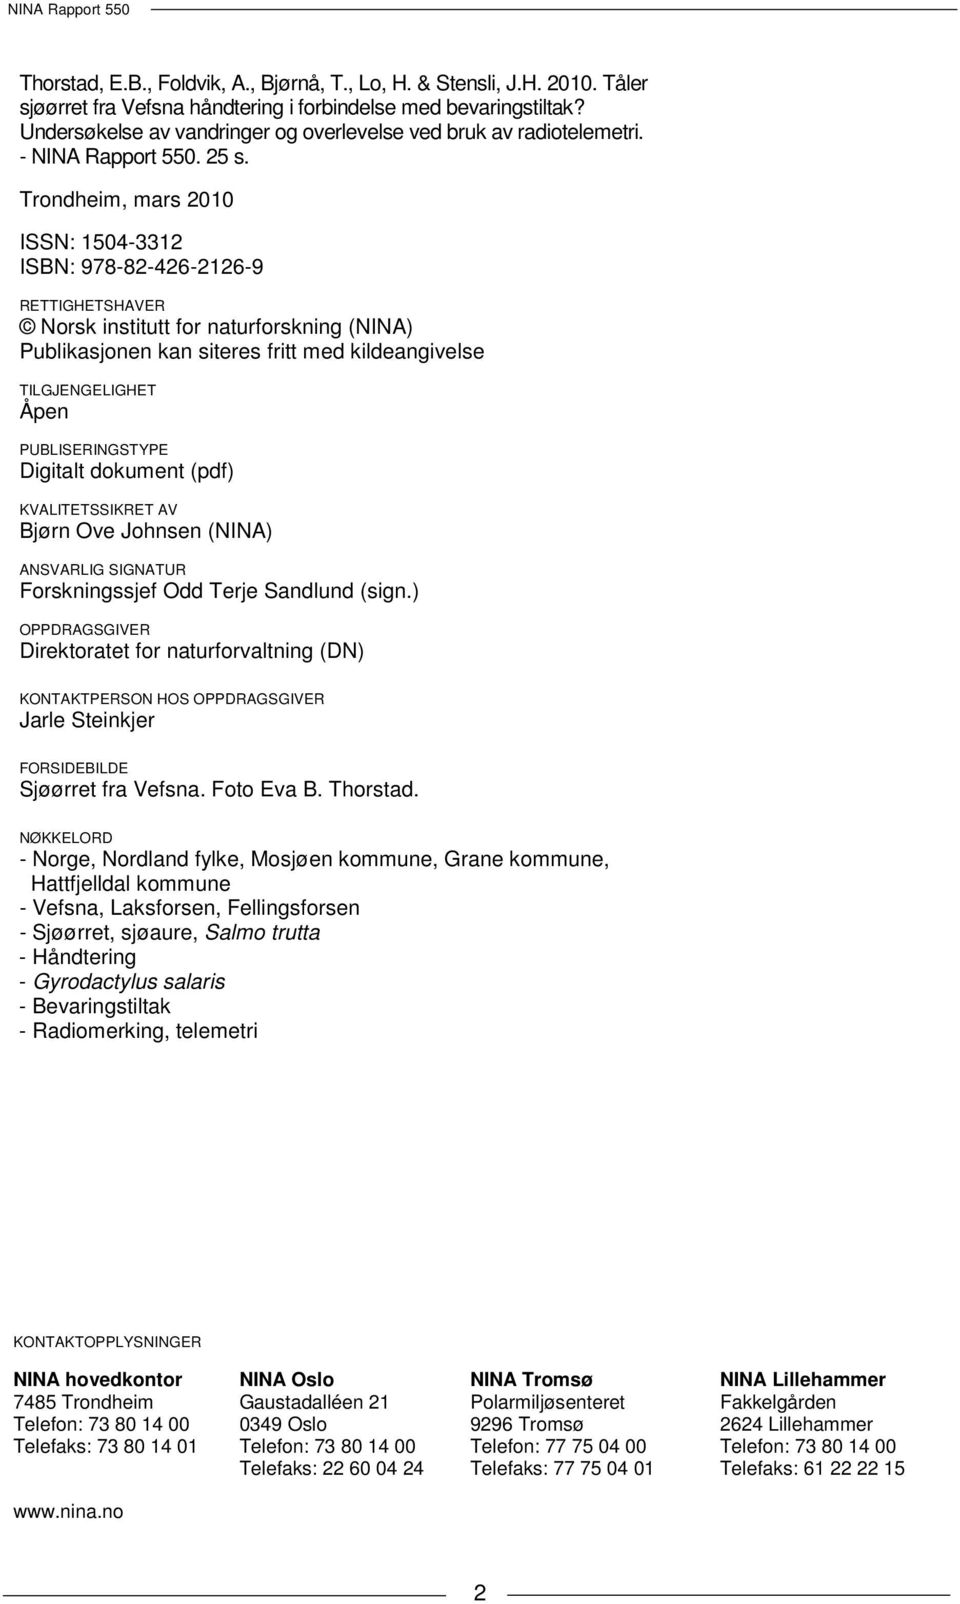 Trondheim, mars 2010 ISSN: 1504-3312 ISBN: 978-82-426-2126-9 RETTIGHETSHAVER Norsk institutt for naturforskning (NINA) Publikasjonen kan siteres fritt med kildeangivelse TILGJENGELIGHET Åpen